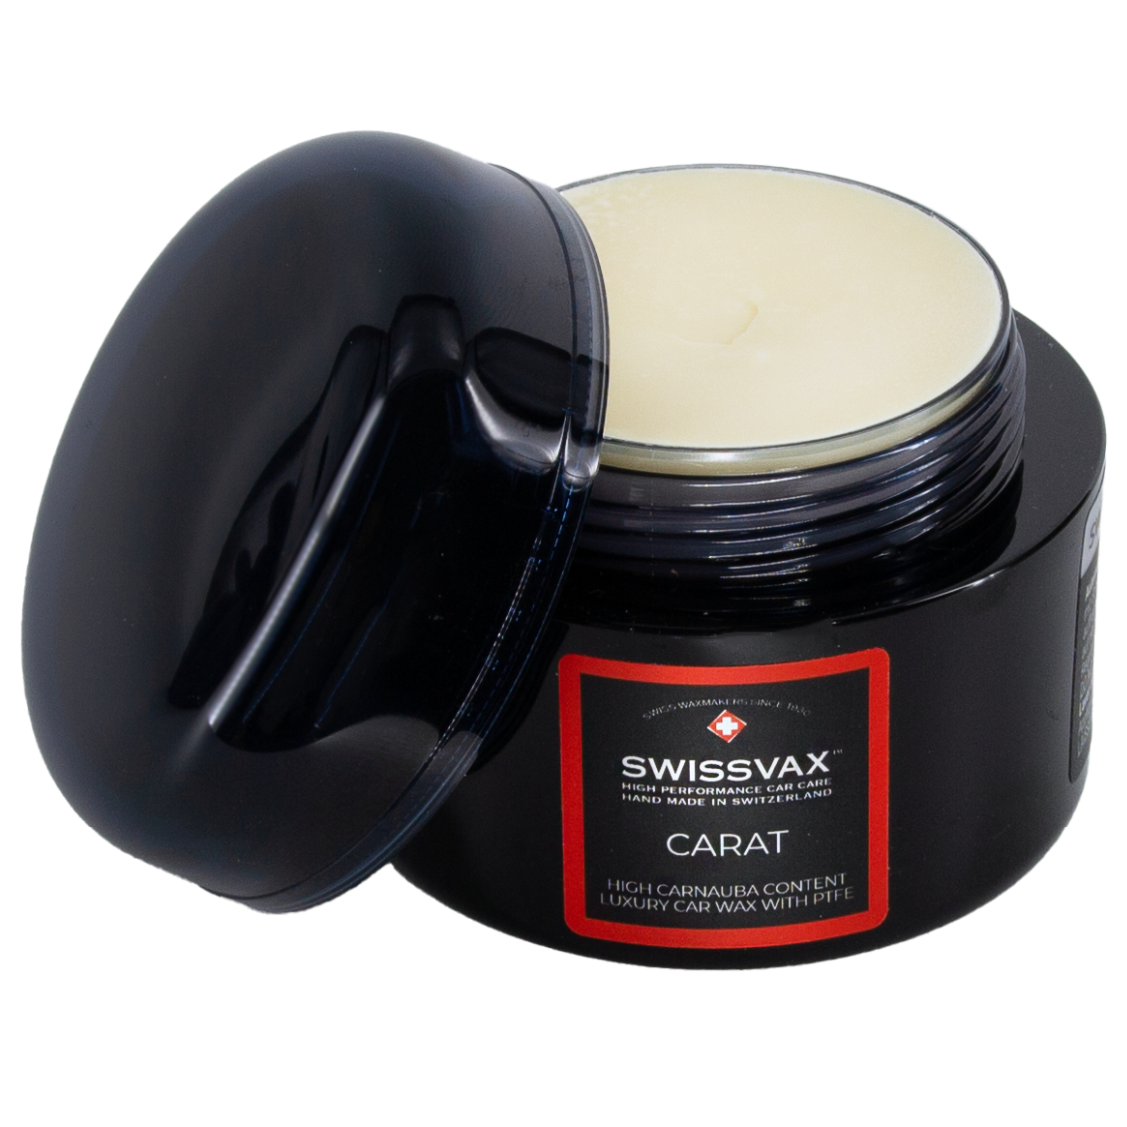 CARAT (81% Vol.) Carnauba wax with PTFE